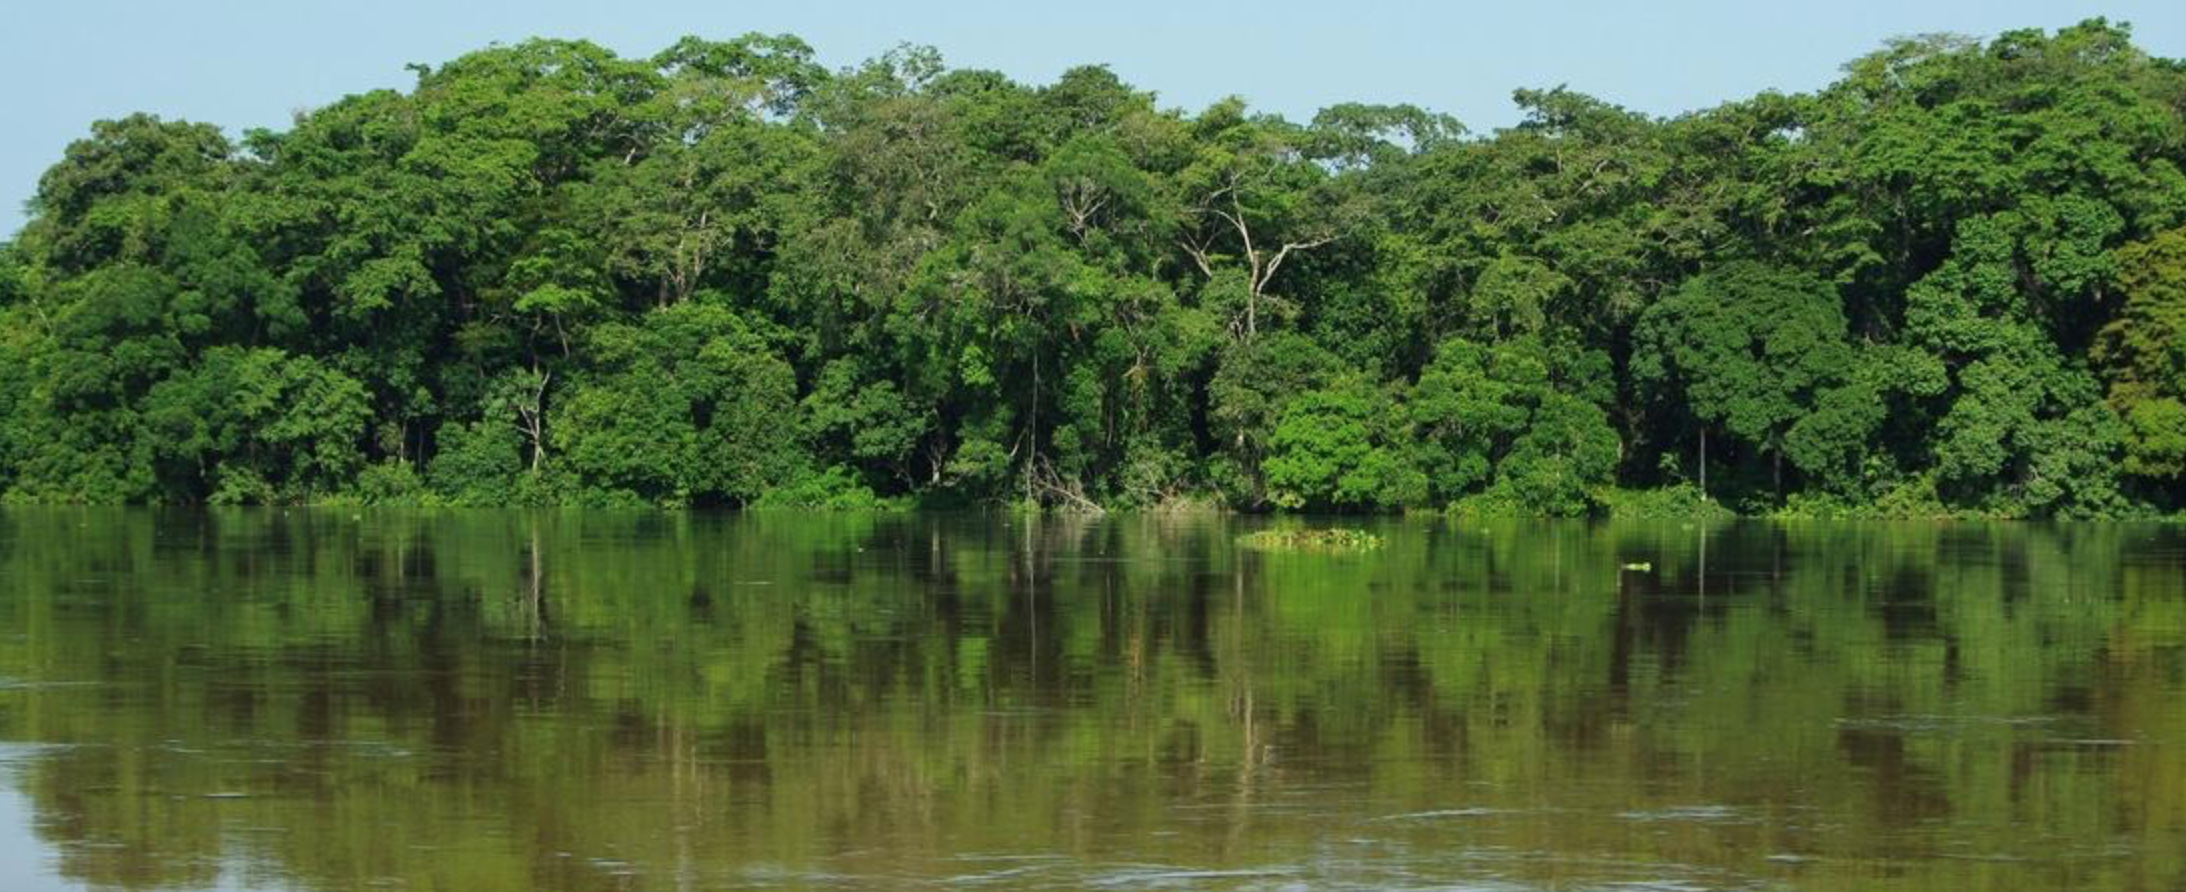 Etat des forêts d’Afrique centrale : un nouveau rapport en collaboration avec le CIRAD pour mieux gérer les écosystèmes forestiers du bassin du Congo